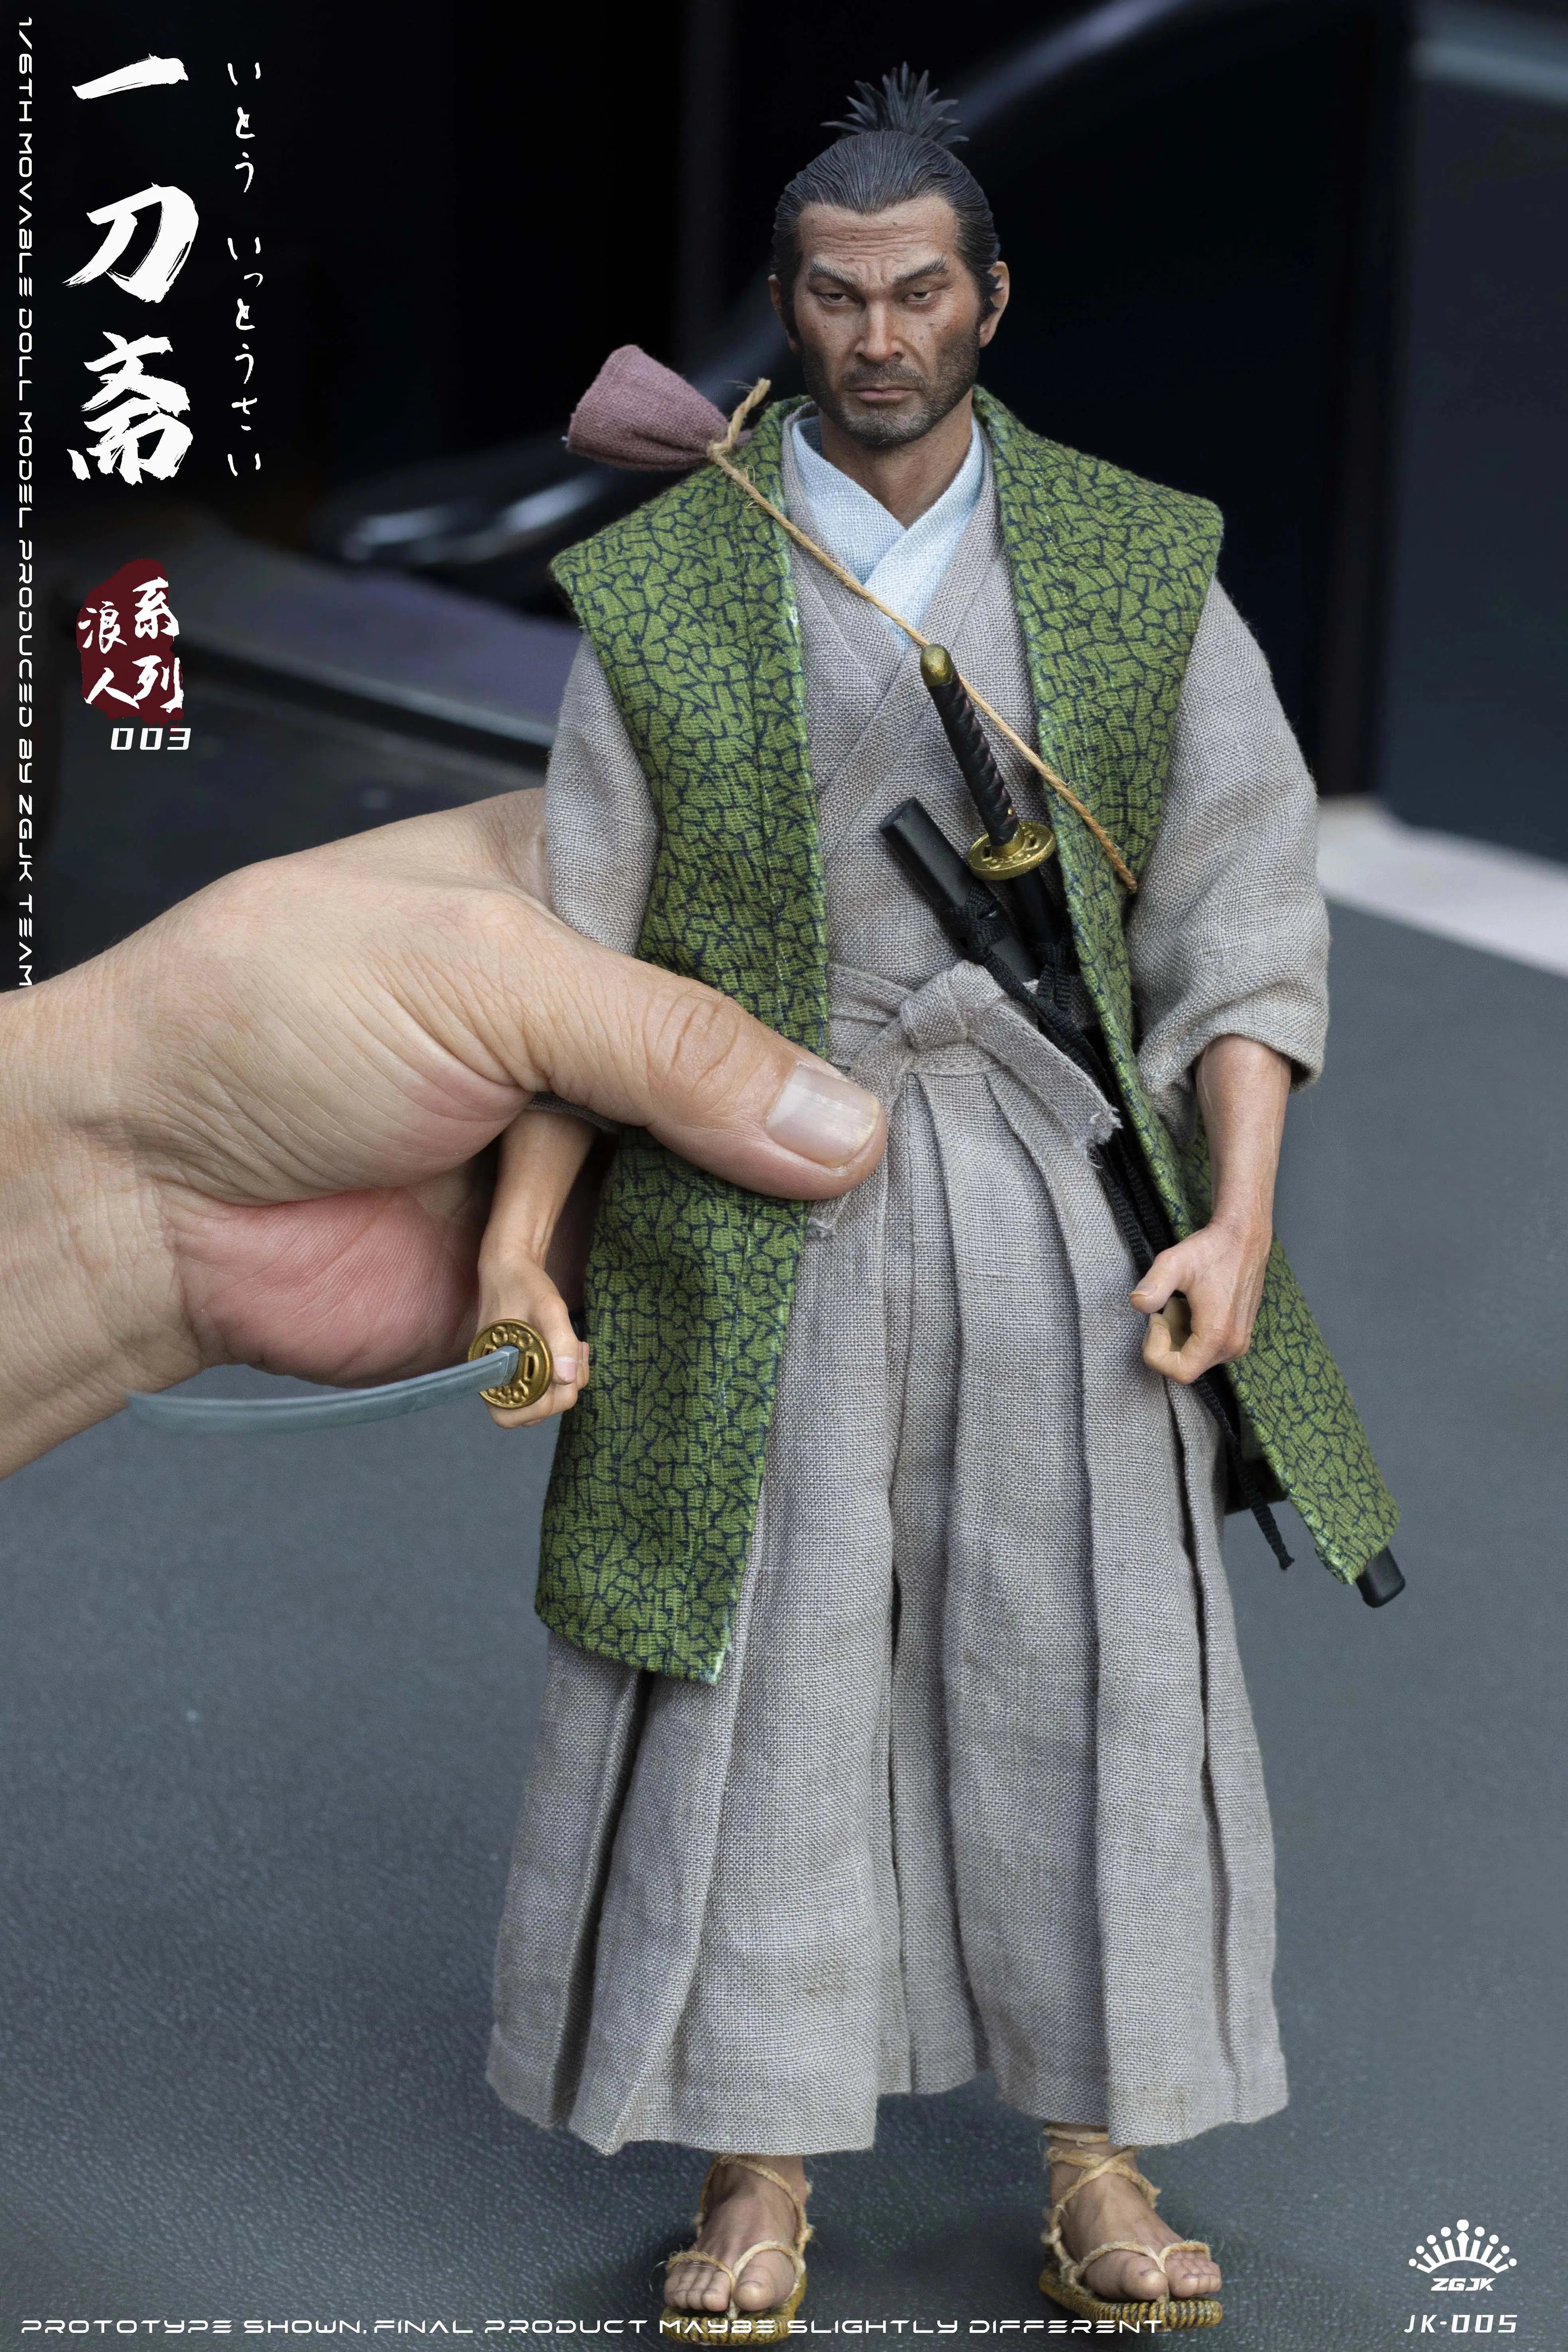 Ito Ittousai: Ronin Series: Sixth Scale Figure: ZGJKTOYS